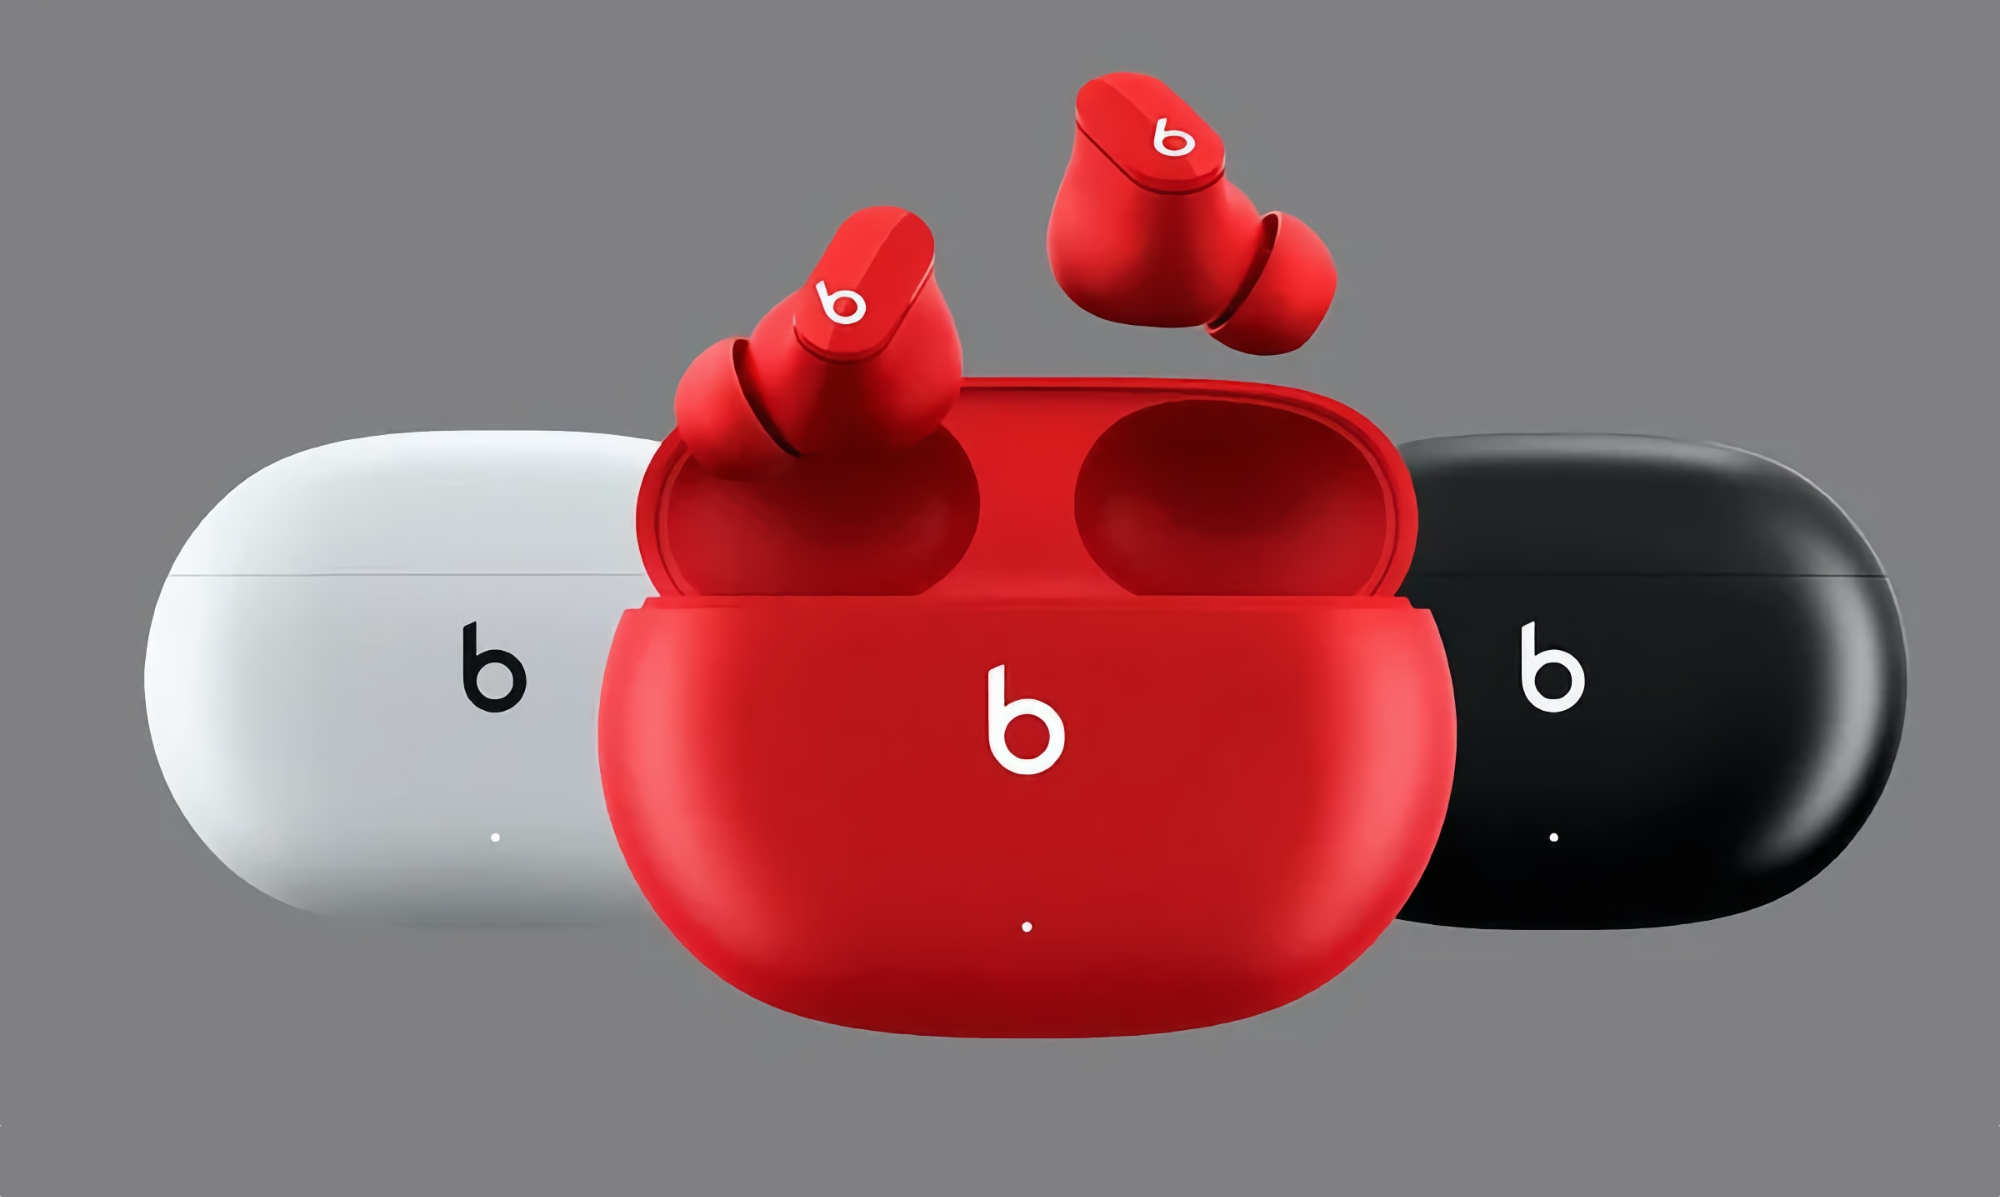 Beats Studio Buds erhalten neue Funktionen mit Firmware-Update